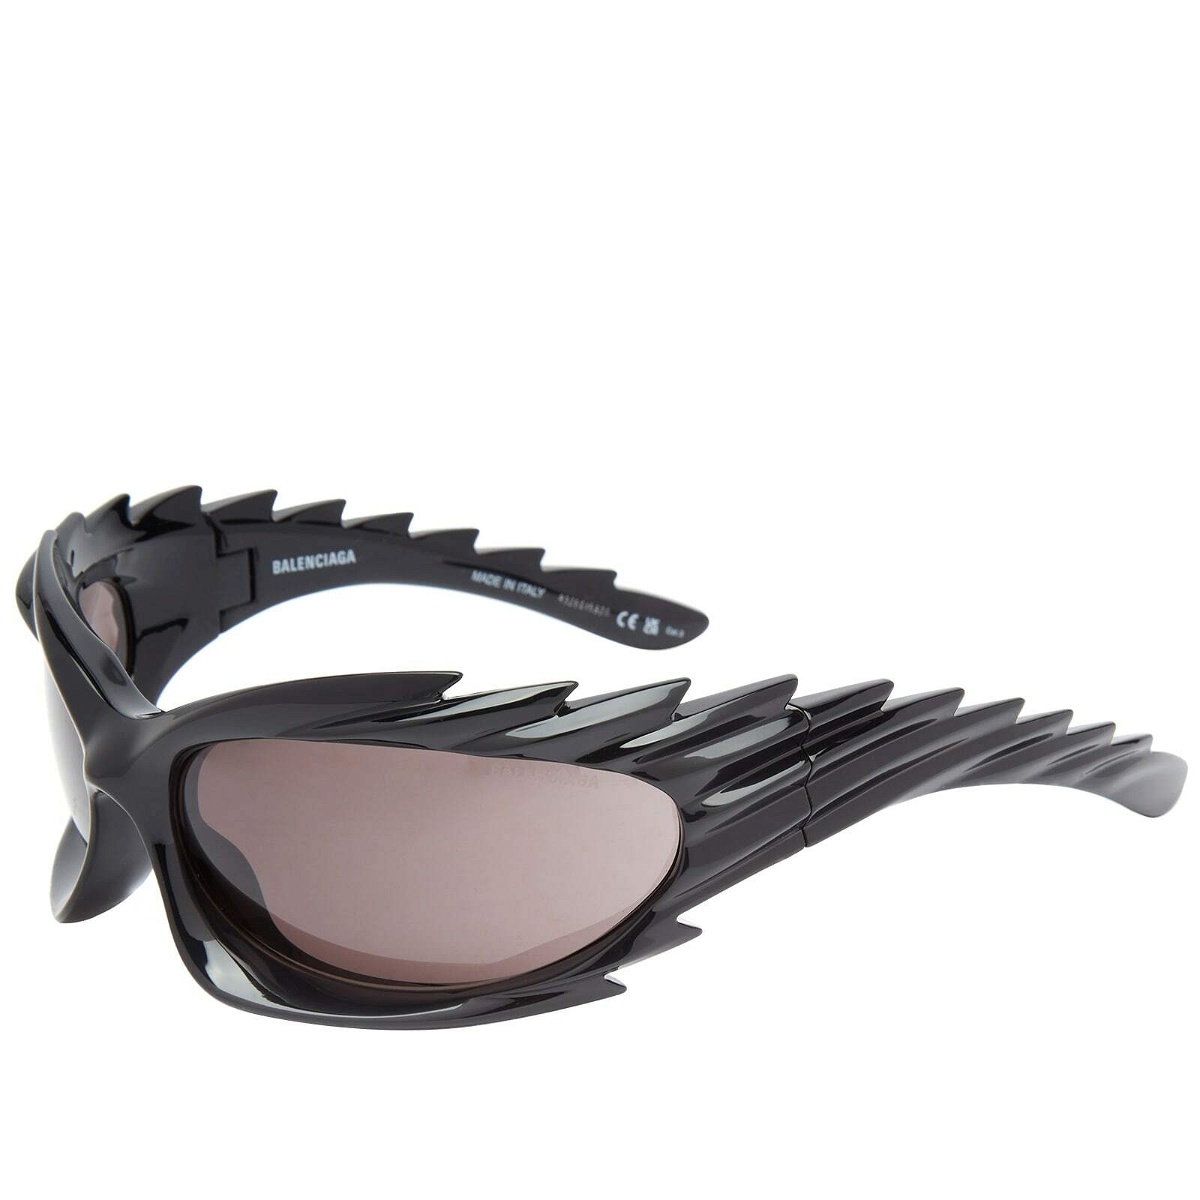 Balenciaga Eyewear Dynasty Dframe Sunglasses  Farfetch